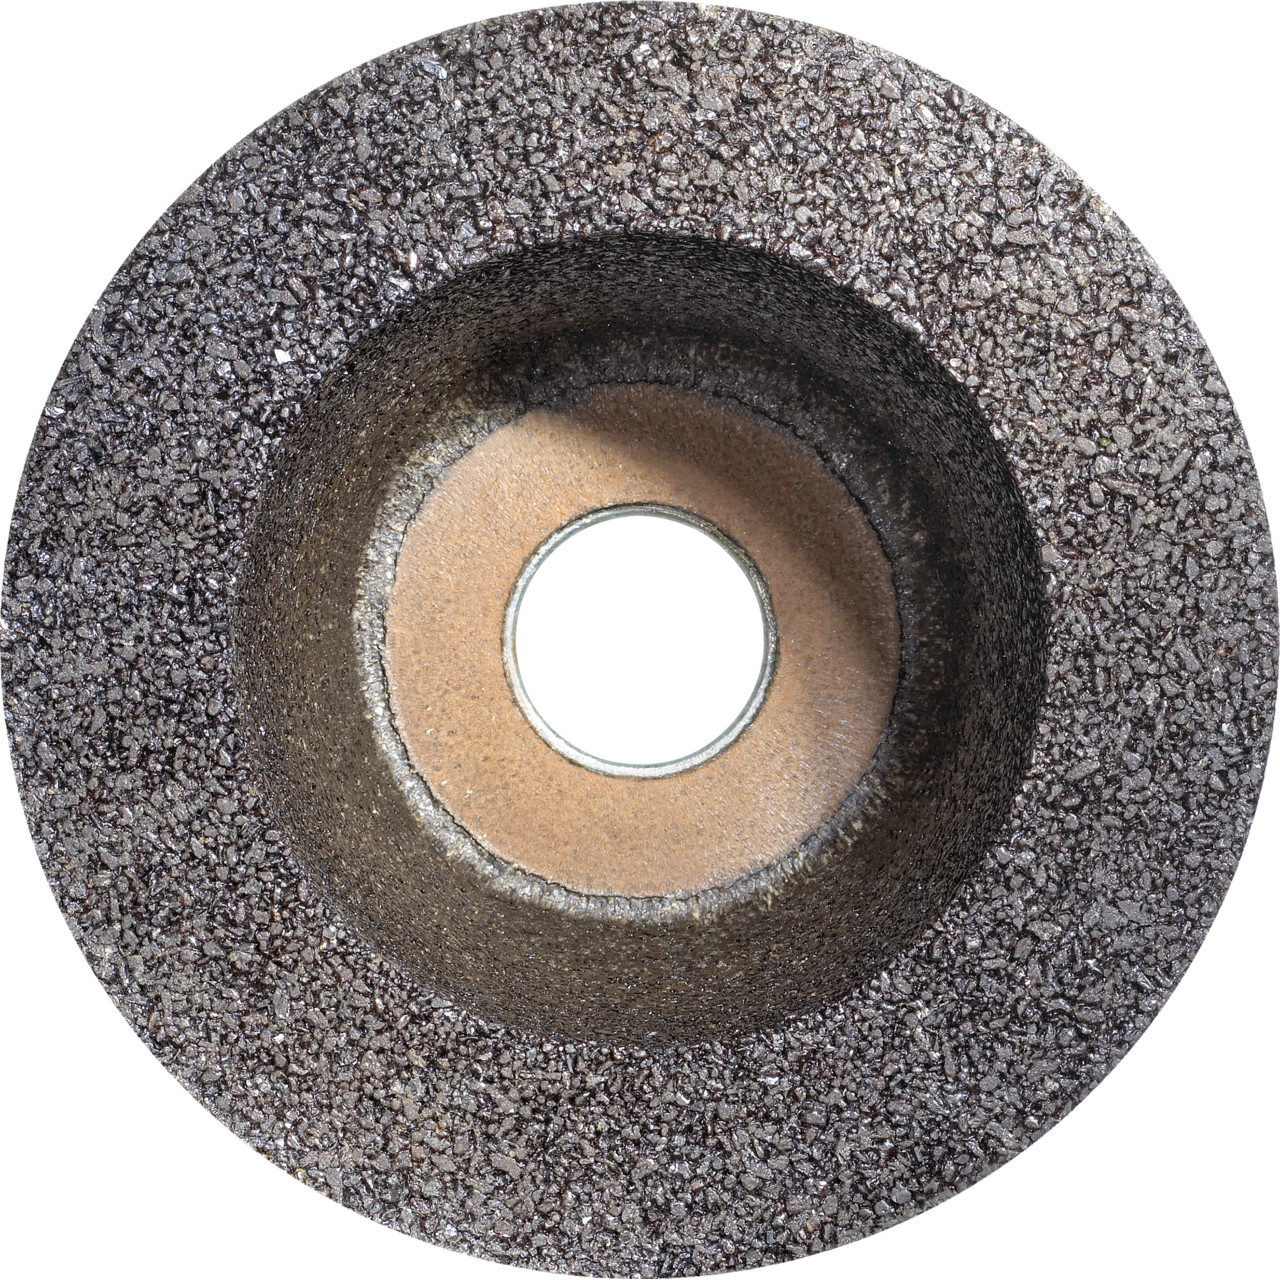 Tyrolit Copa de resina D/JxDxH 130/90x55x22,23 Para acero, forma: 11BT rueda de copa, Art. 310997